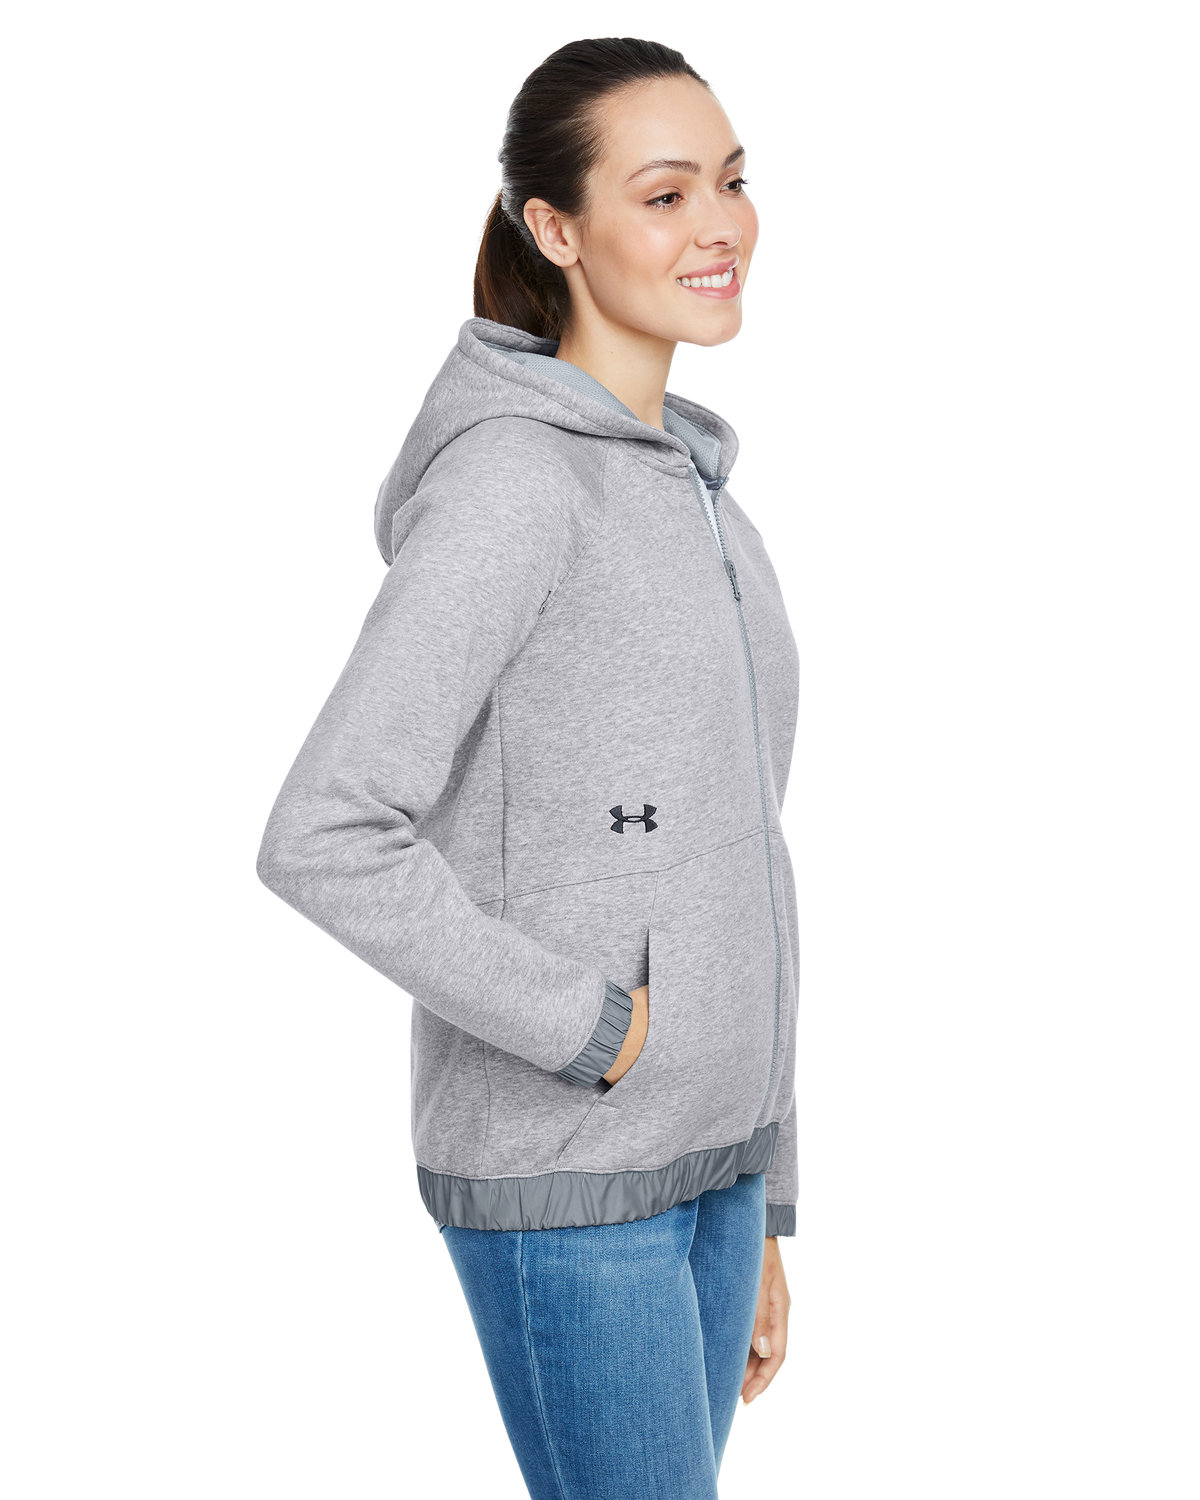 Under Armour Ladies' Hustle Full-Zip Hooded Sweatshirt